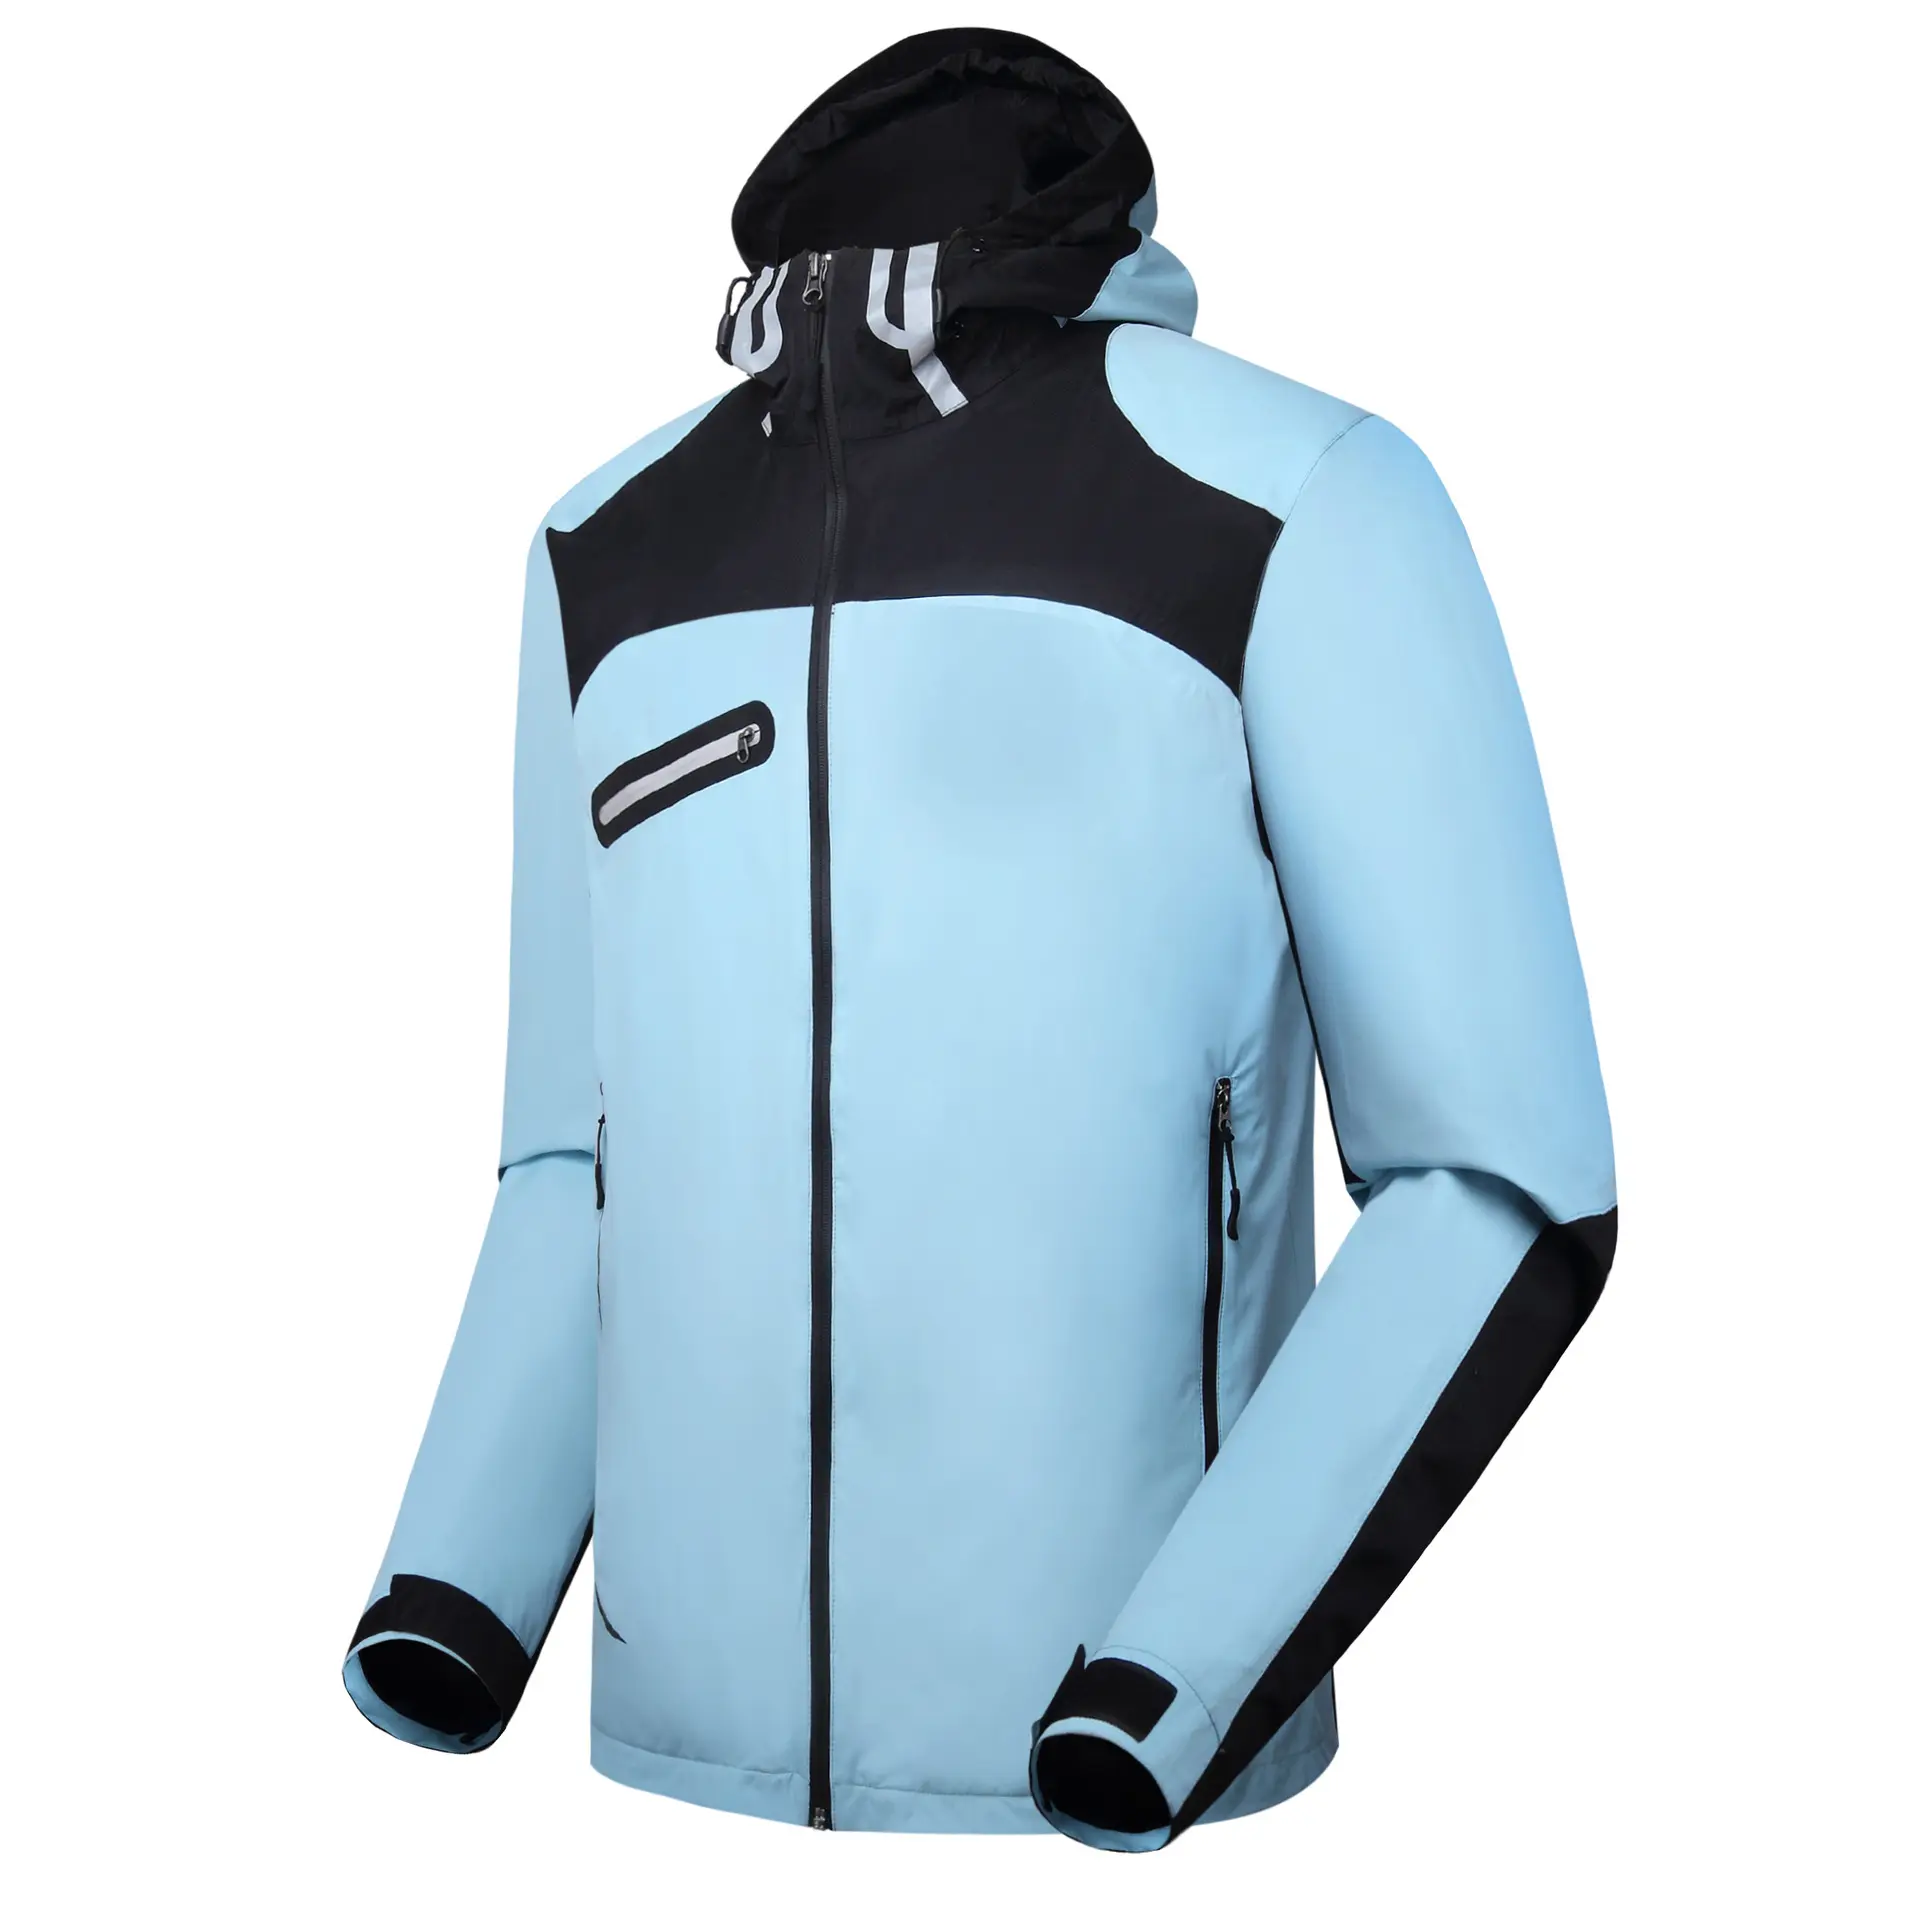 OEM factory Custom logo Nylon polyester golf wear sports wear rainsuits rain gear waterproof jacket with hood